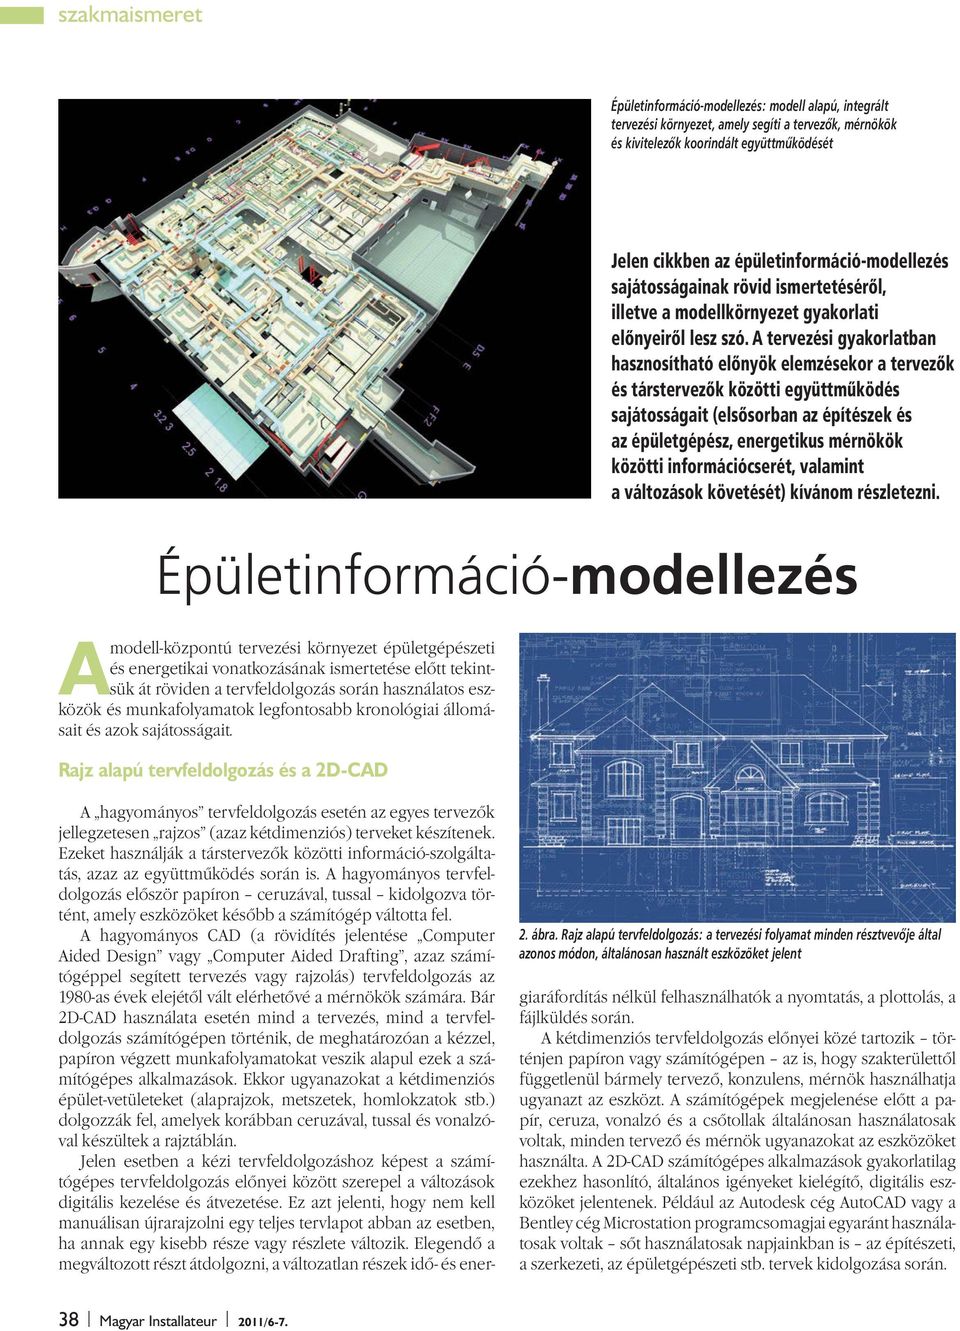 sajátosságait. Rajz alapú tervfeldolgozás és a 2D-CAD Jelen cikkben az épületinformáció-modellezés sajátosságainak rövid ismertetésérõl, illetve a modellkörnyezet gyakorlati elõnyeirõl lesz szó.